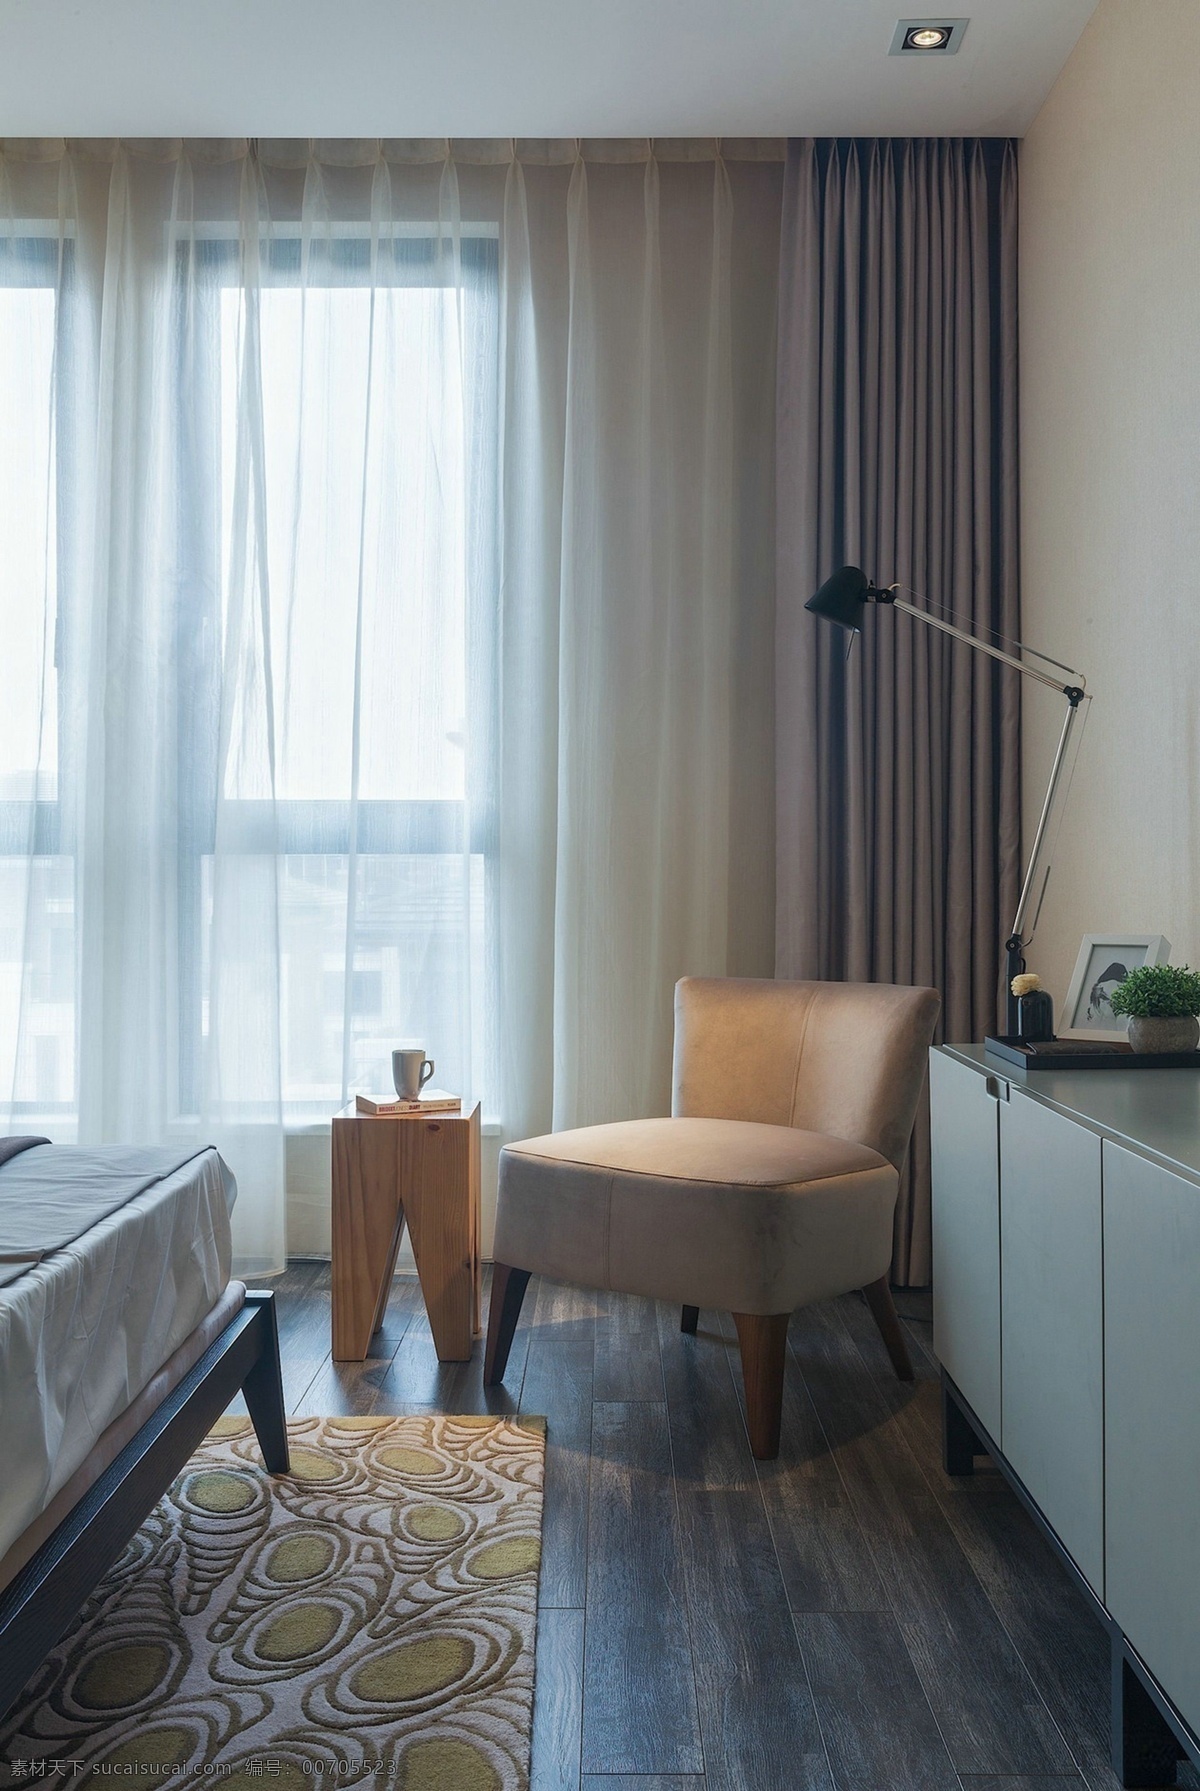 北欧 简约 卧室 落地窗 设计图 家居 家居生活 室内设计 装修 室内 家具 装修设计 环境设计